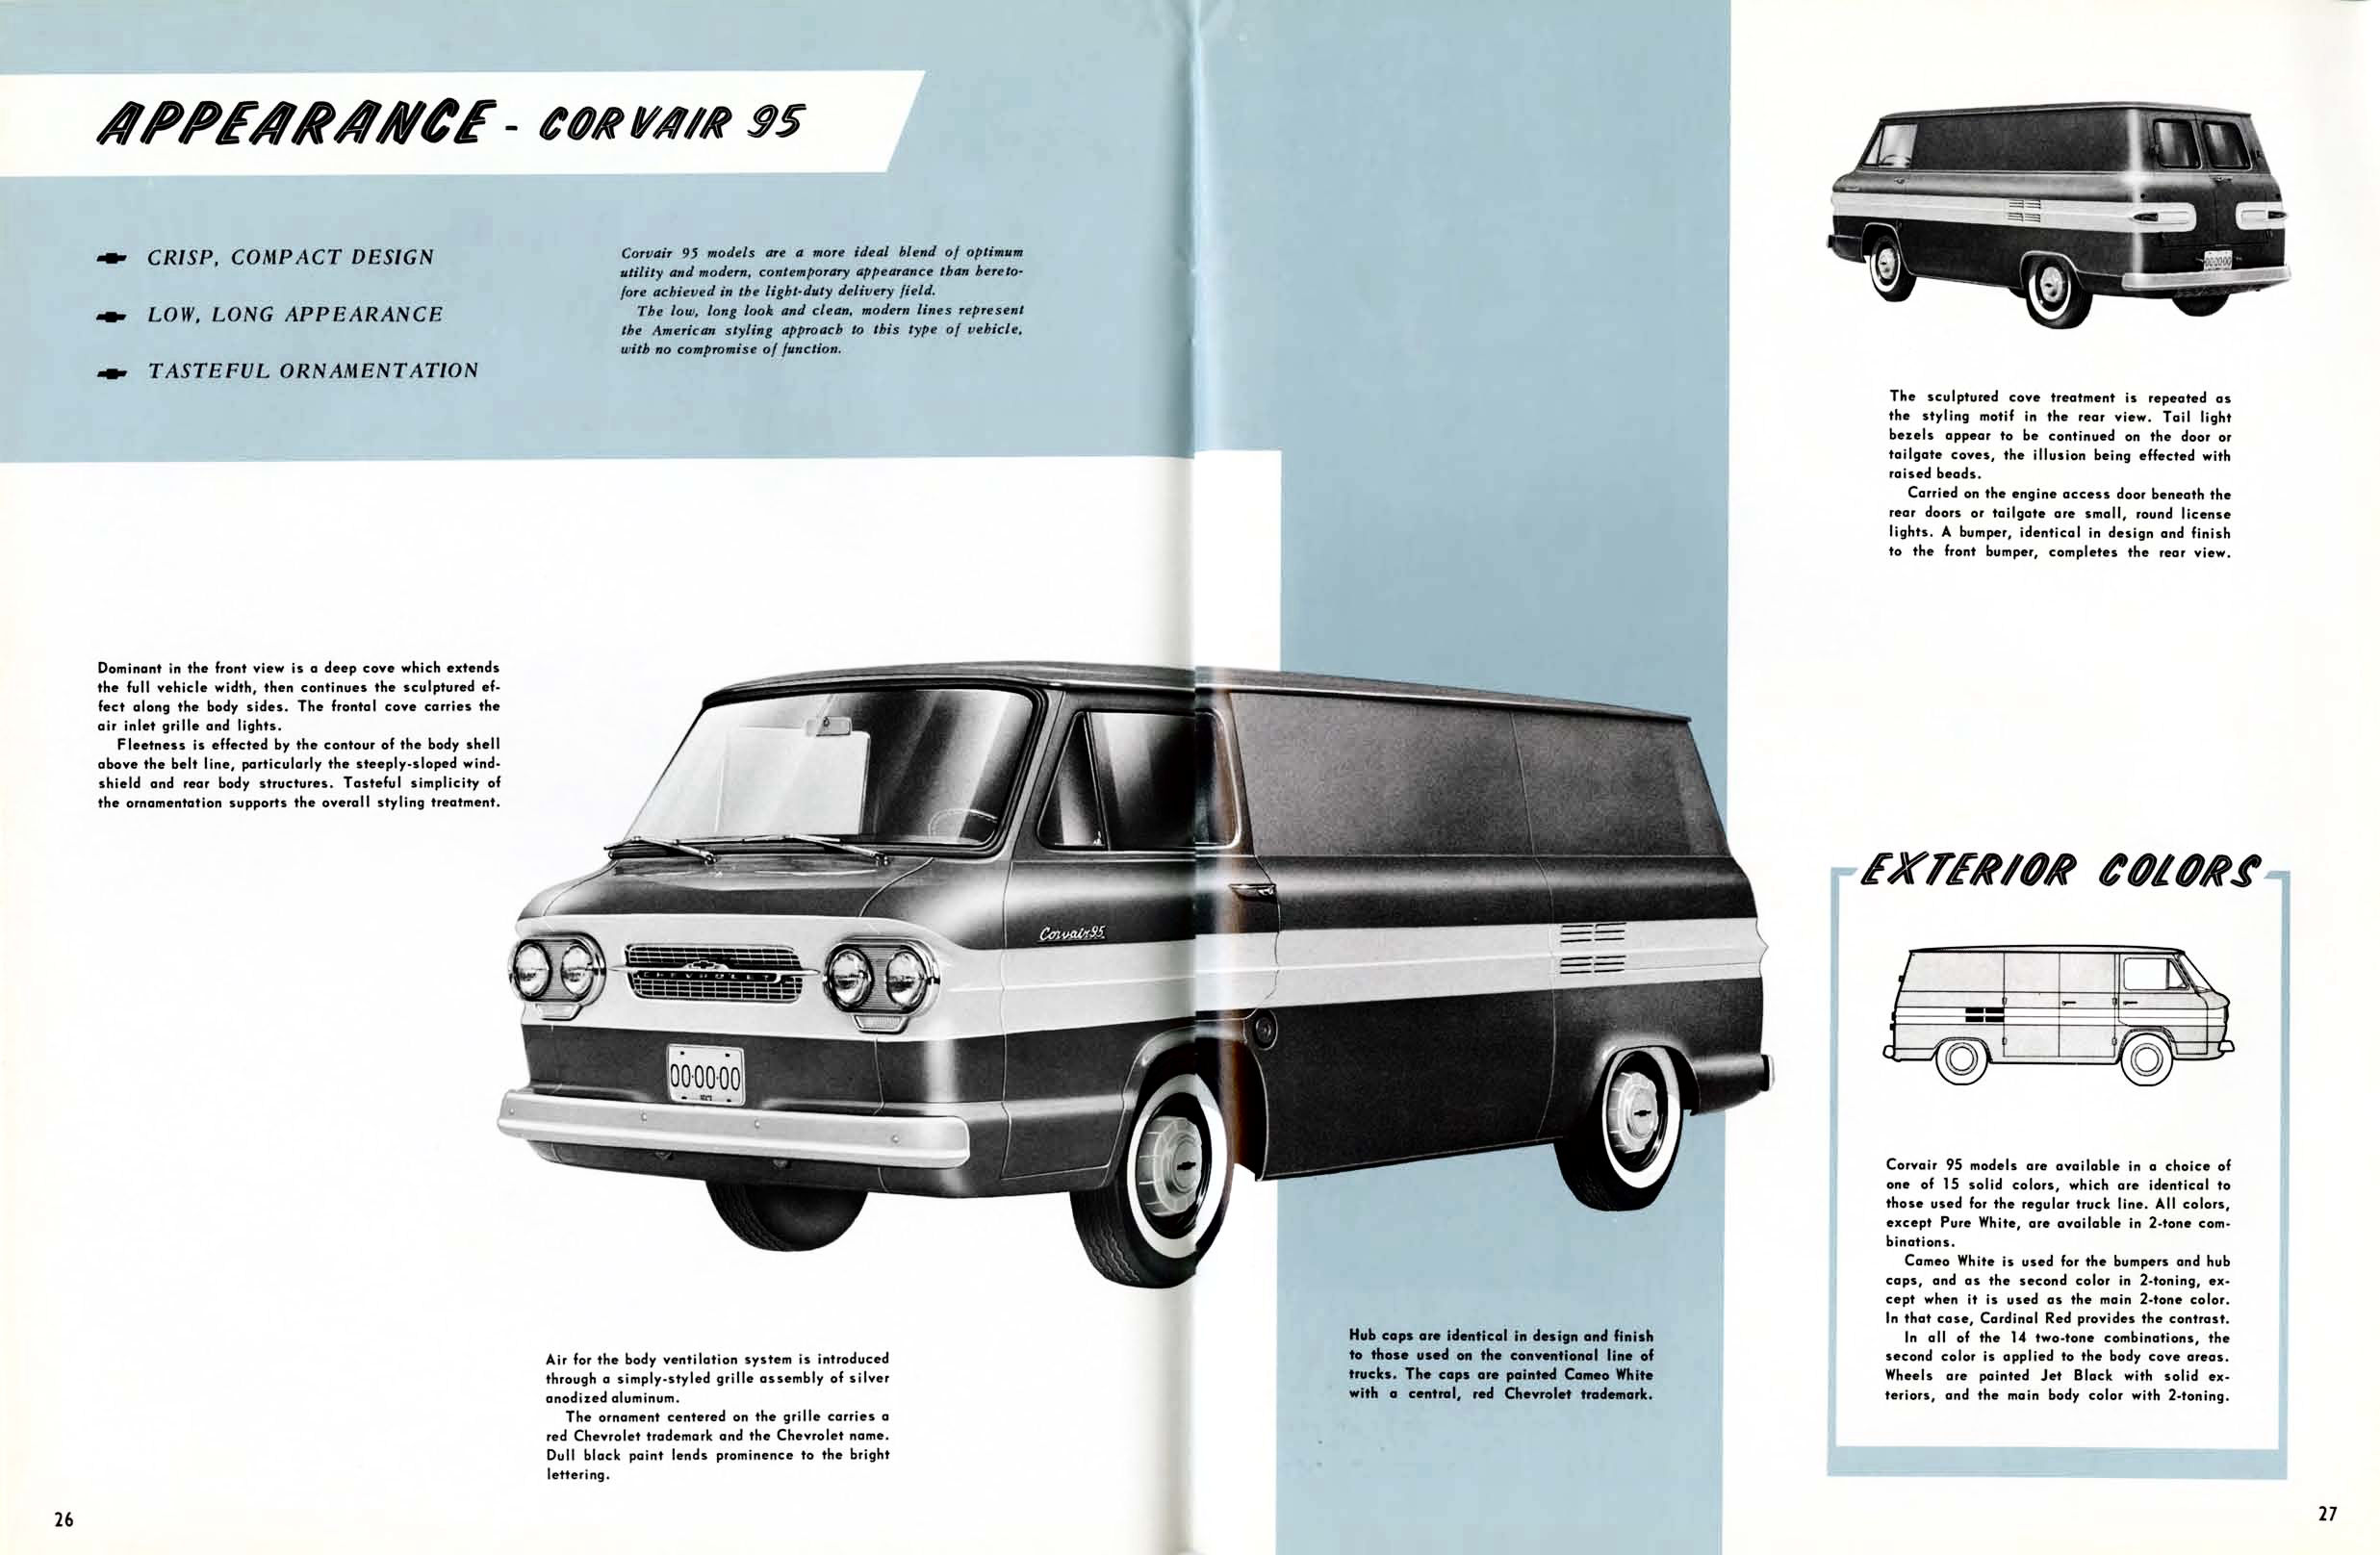 1961 Chevrolet Truck Engineering Features-26-27